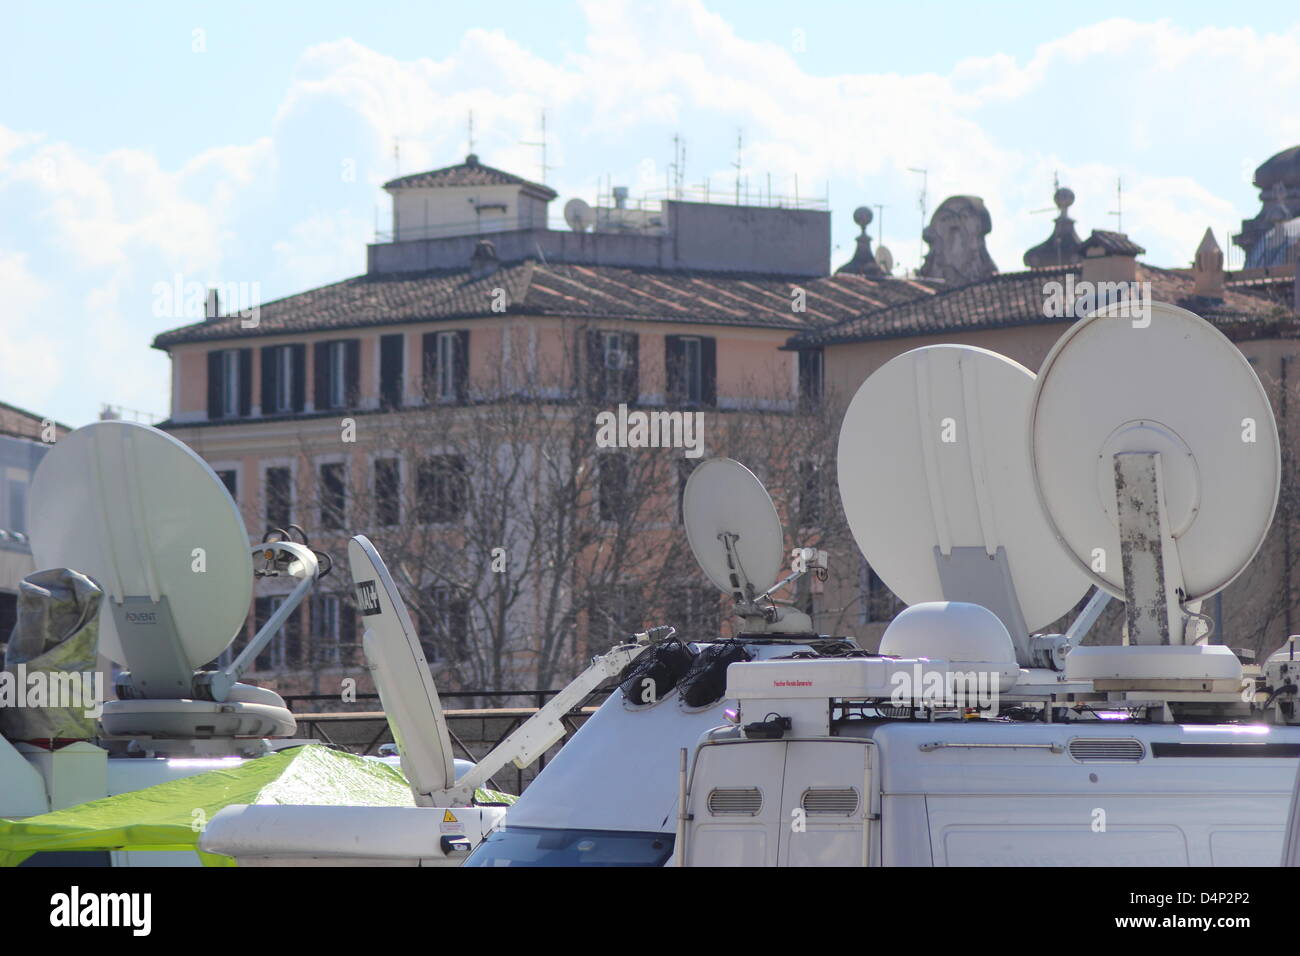 Roma, 16/03/2013 - Preparazione di piazza San Pietro e via della conciliazione per la cerimonia di insediamento del Papa Francesco I Foto Stock